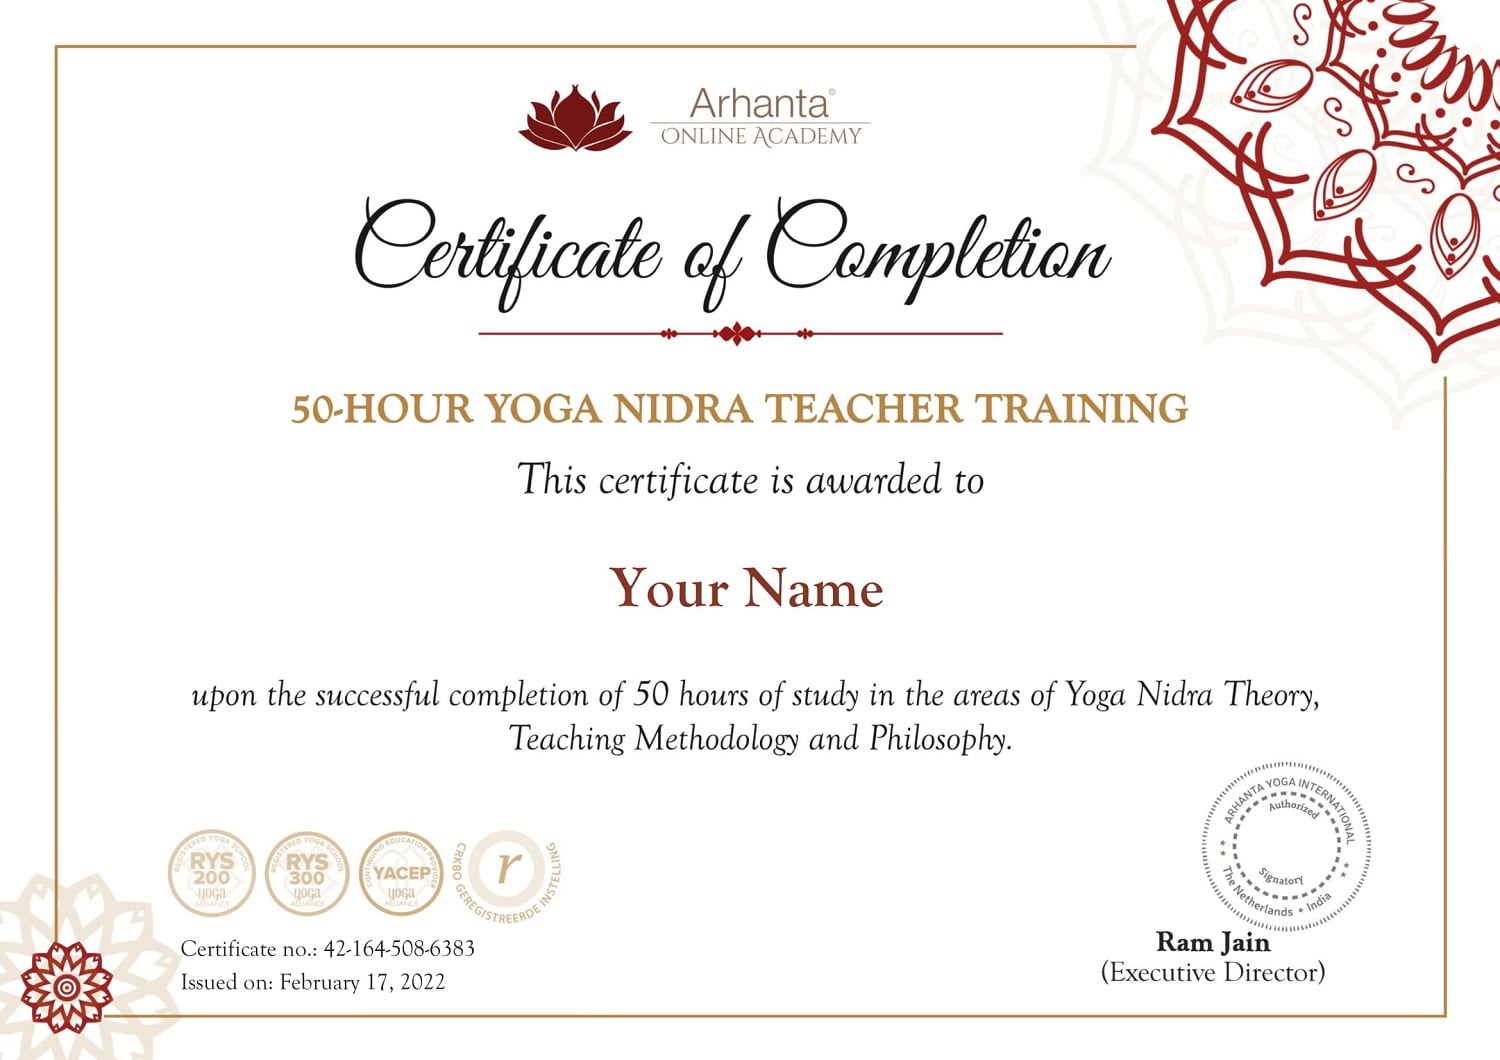 Certificado de formación de profesores de Yoga Nidra de 50 horas